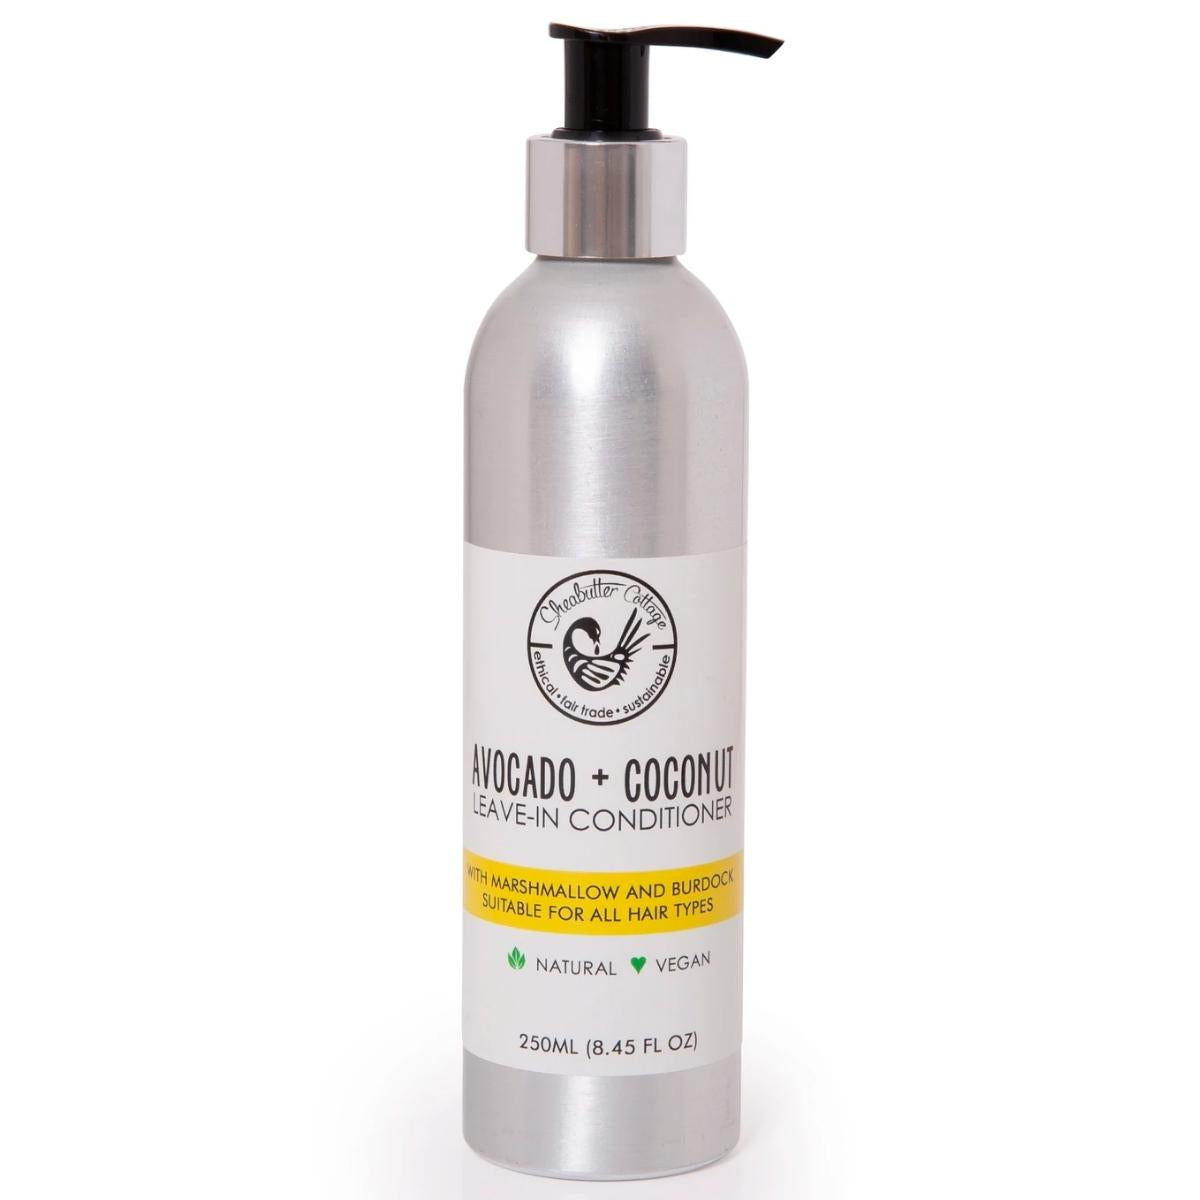 Spray hydratant naturel, idéal pour une utilisation fréquente. Il facilite le démêlage de vos cheveux et aide à maintenir un niveau d’hydratation optimal.